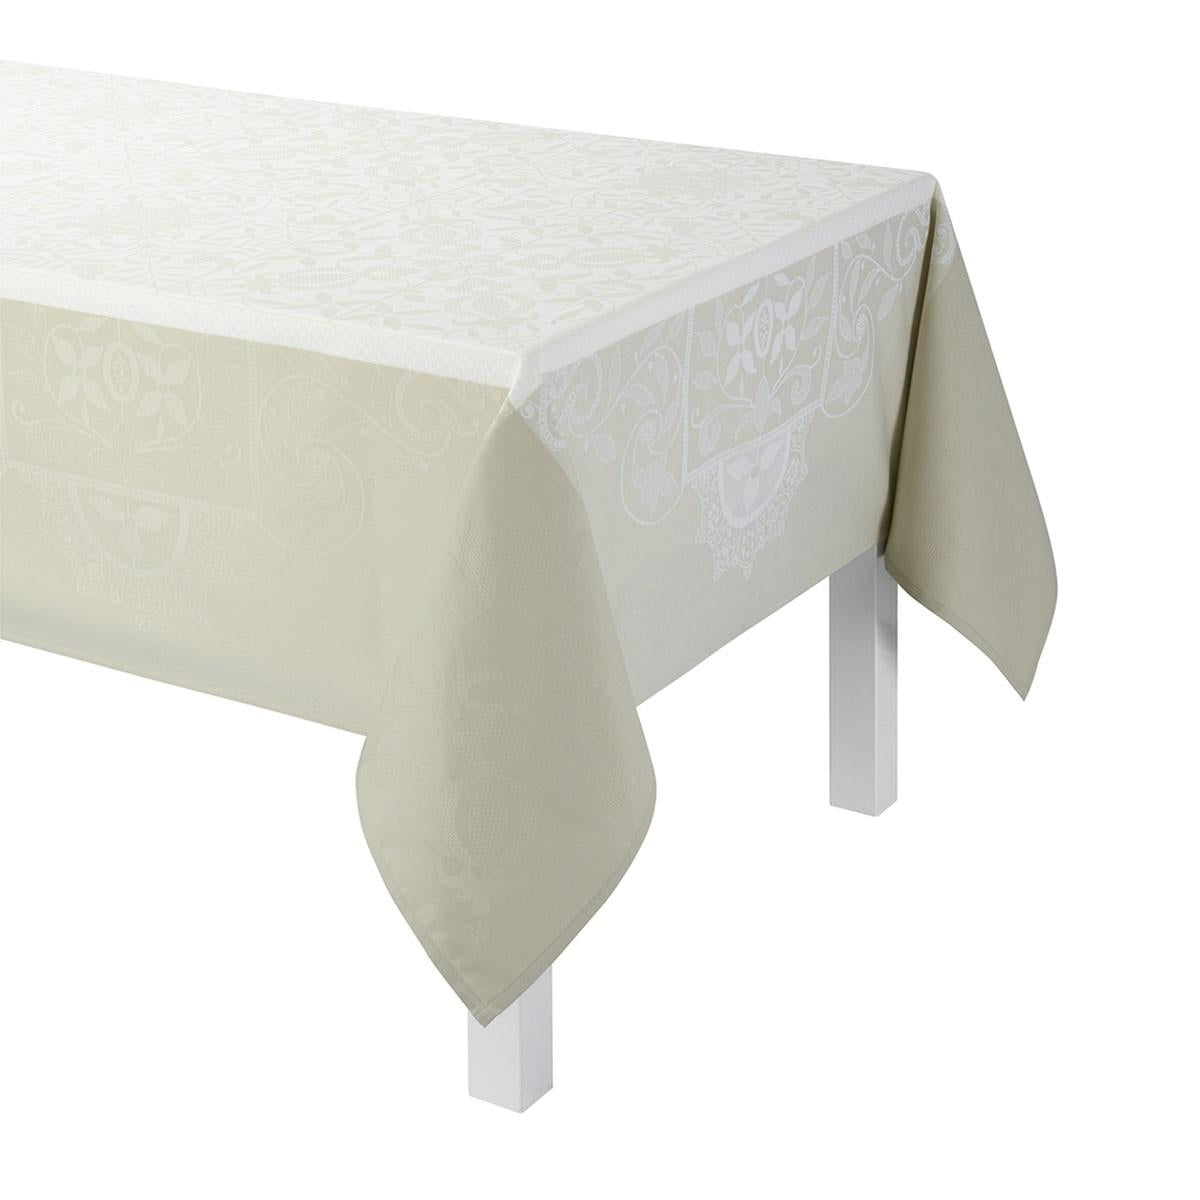 Venezia Ivoire Tablecloth - 69x149"